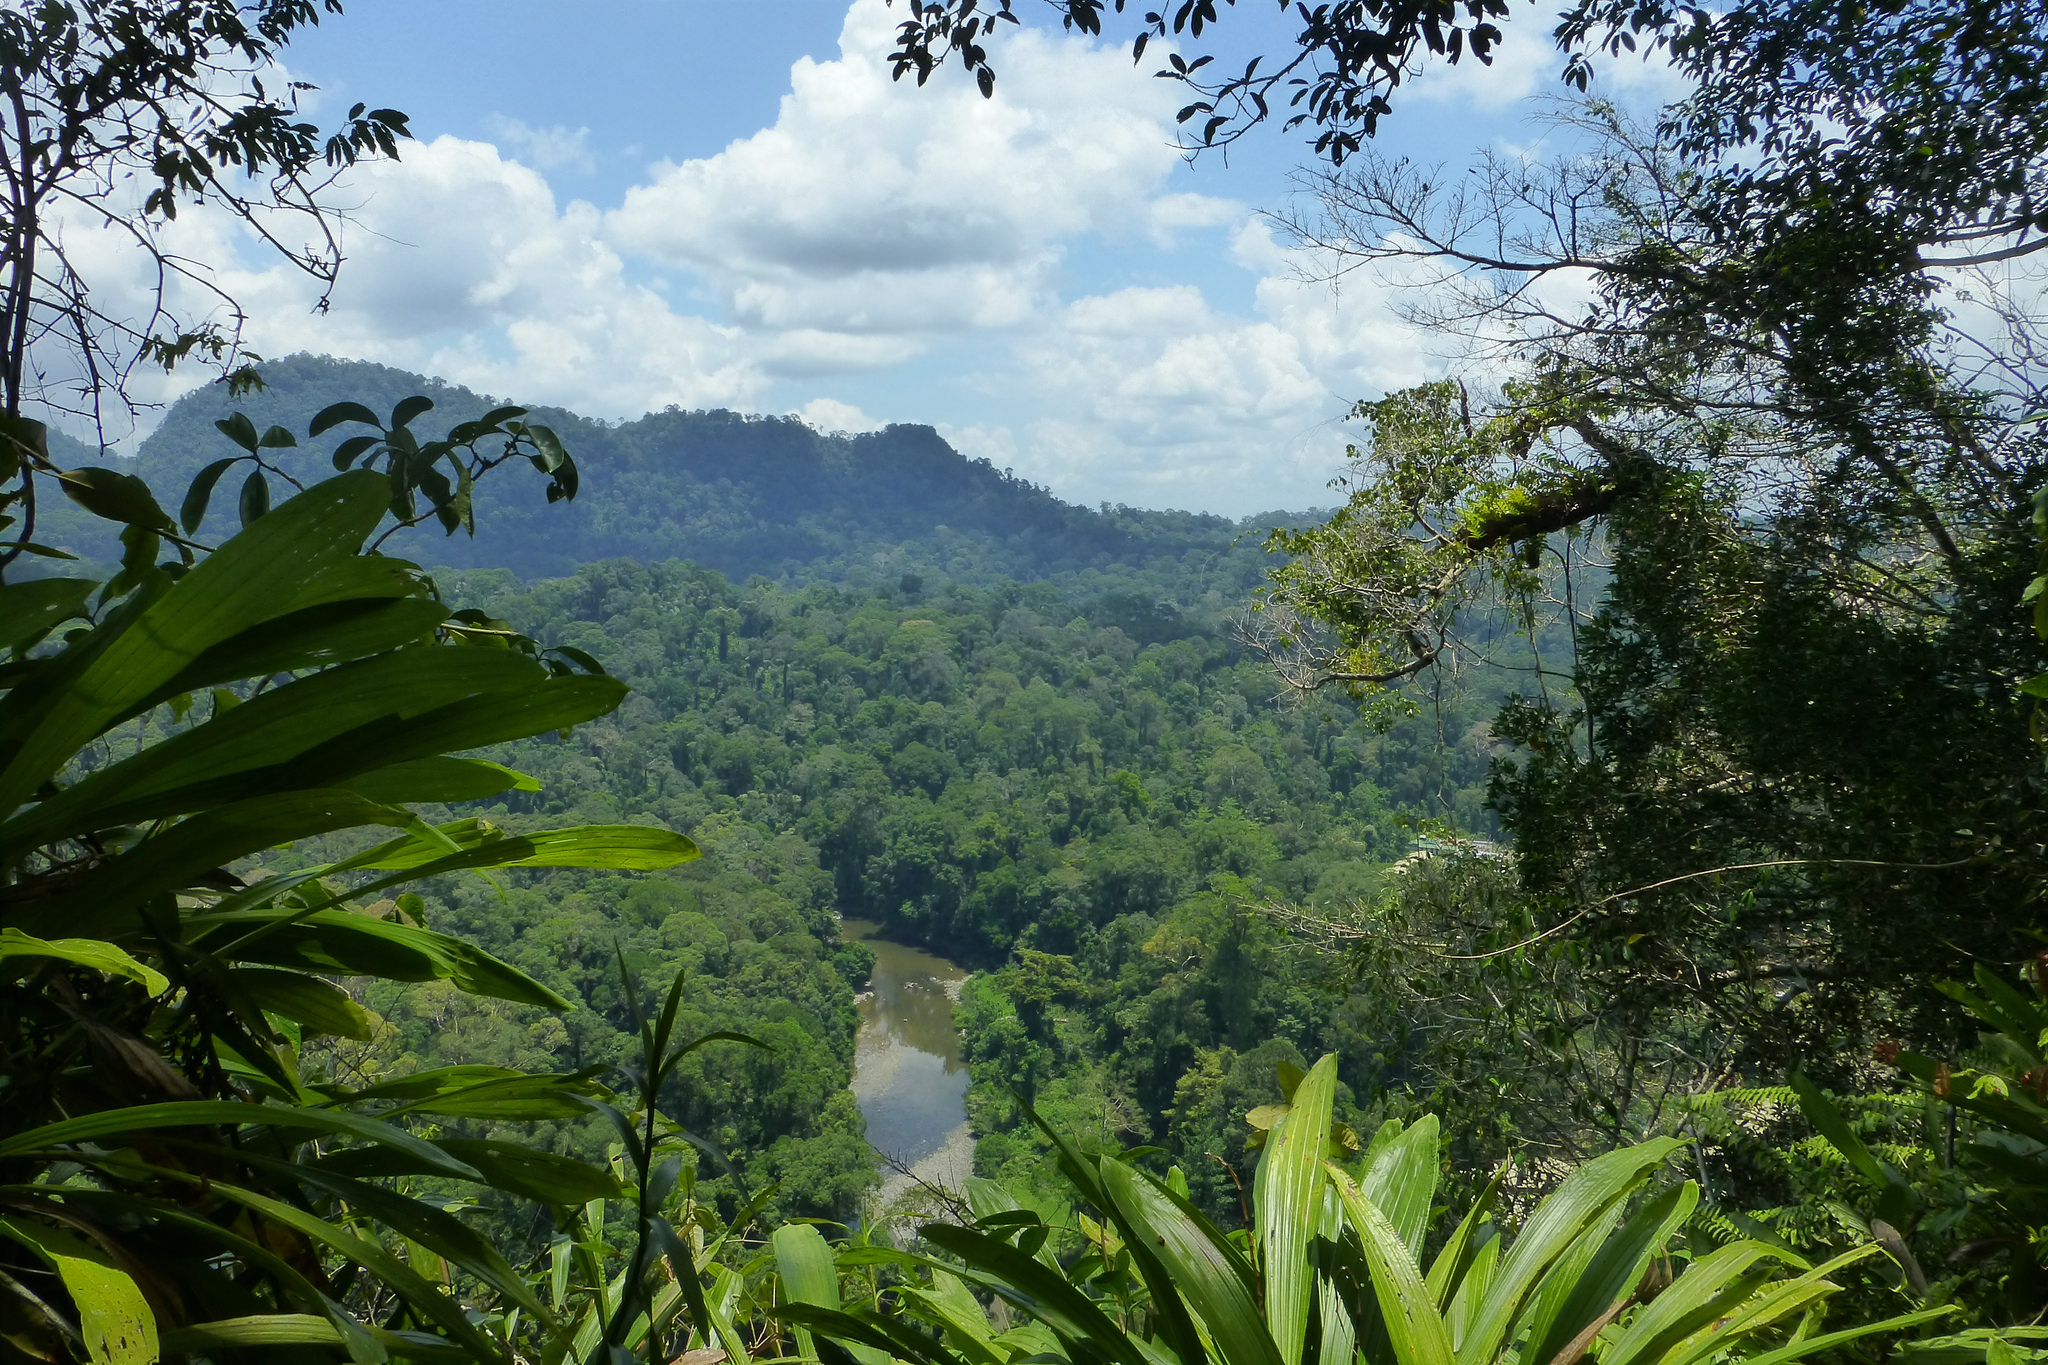 A sunny view over the jungle in Borneo, Indonesia